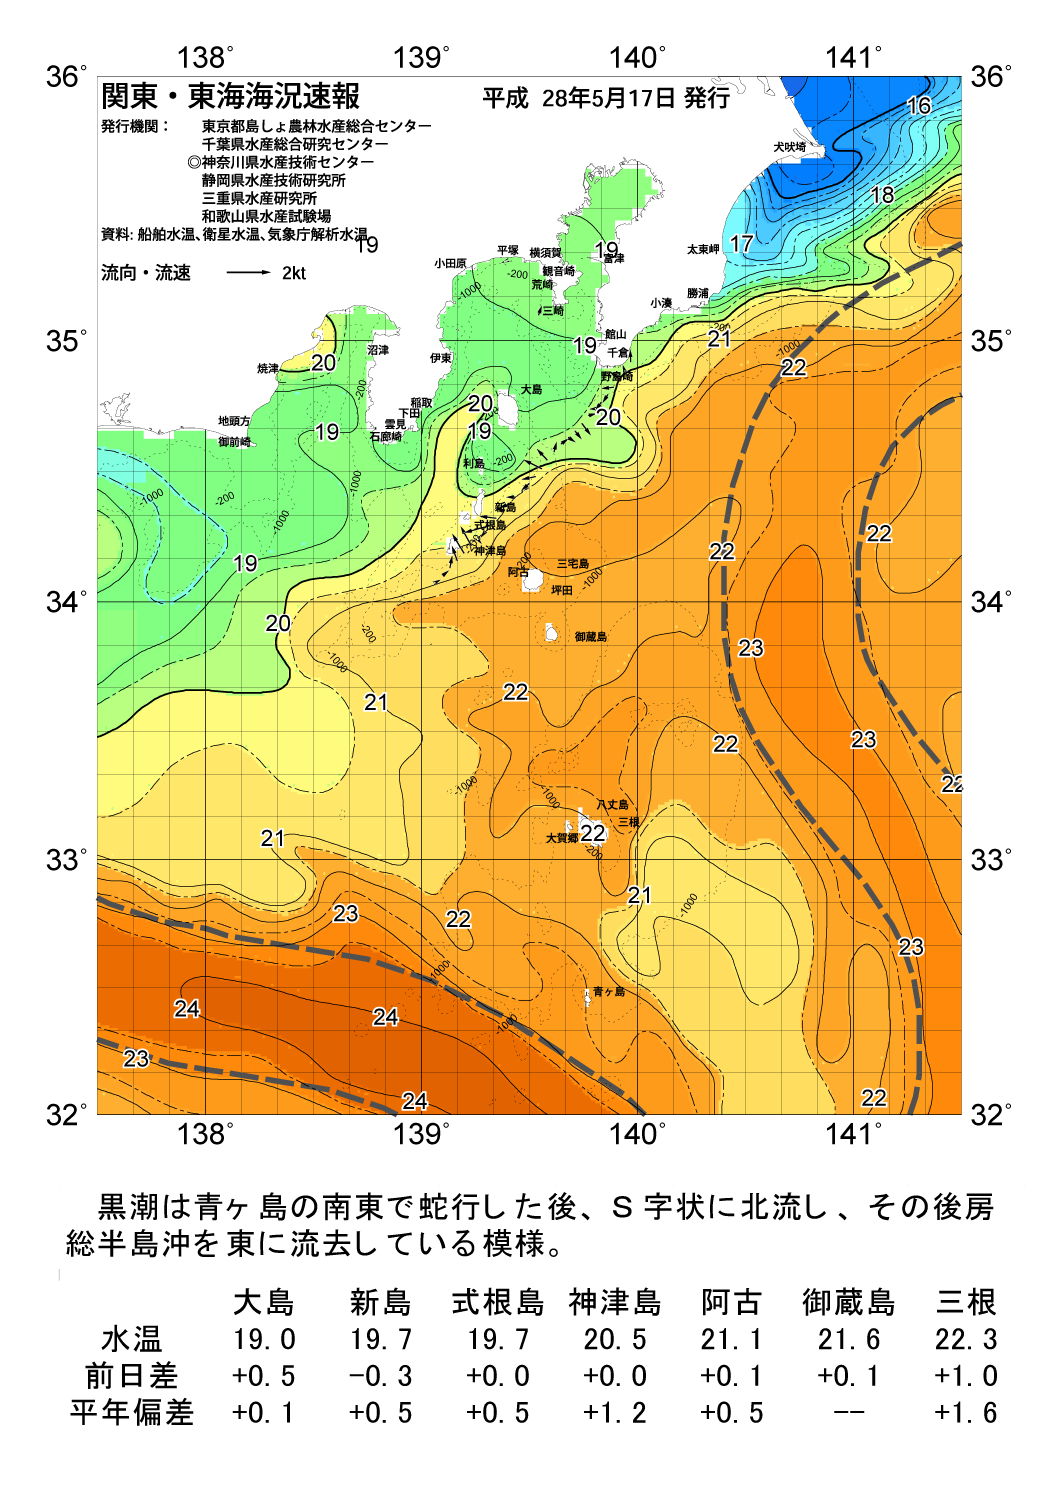 海の天気図2016年5月17日 東京都島しょ農林水産総合センター